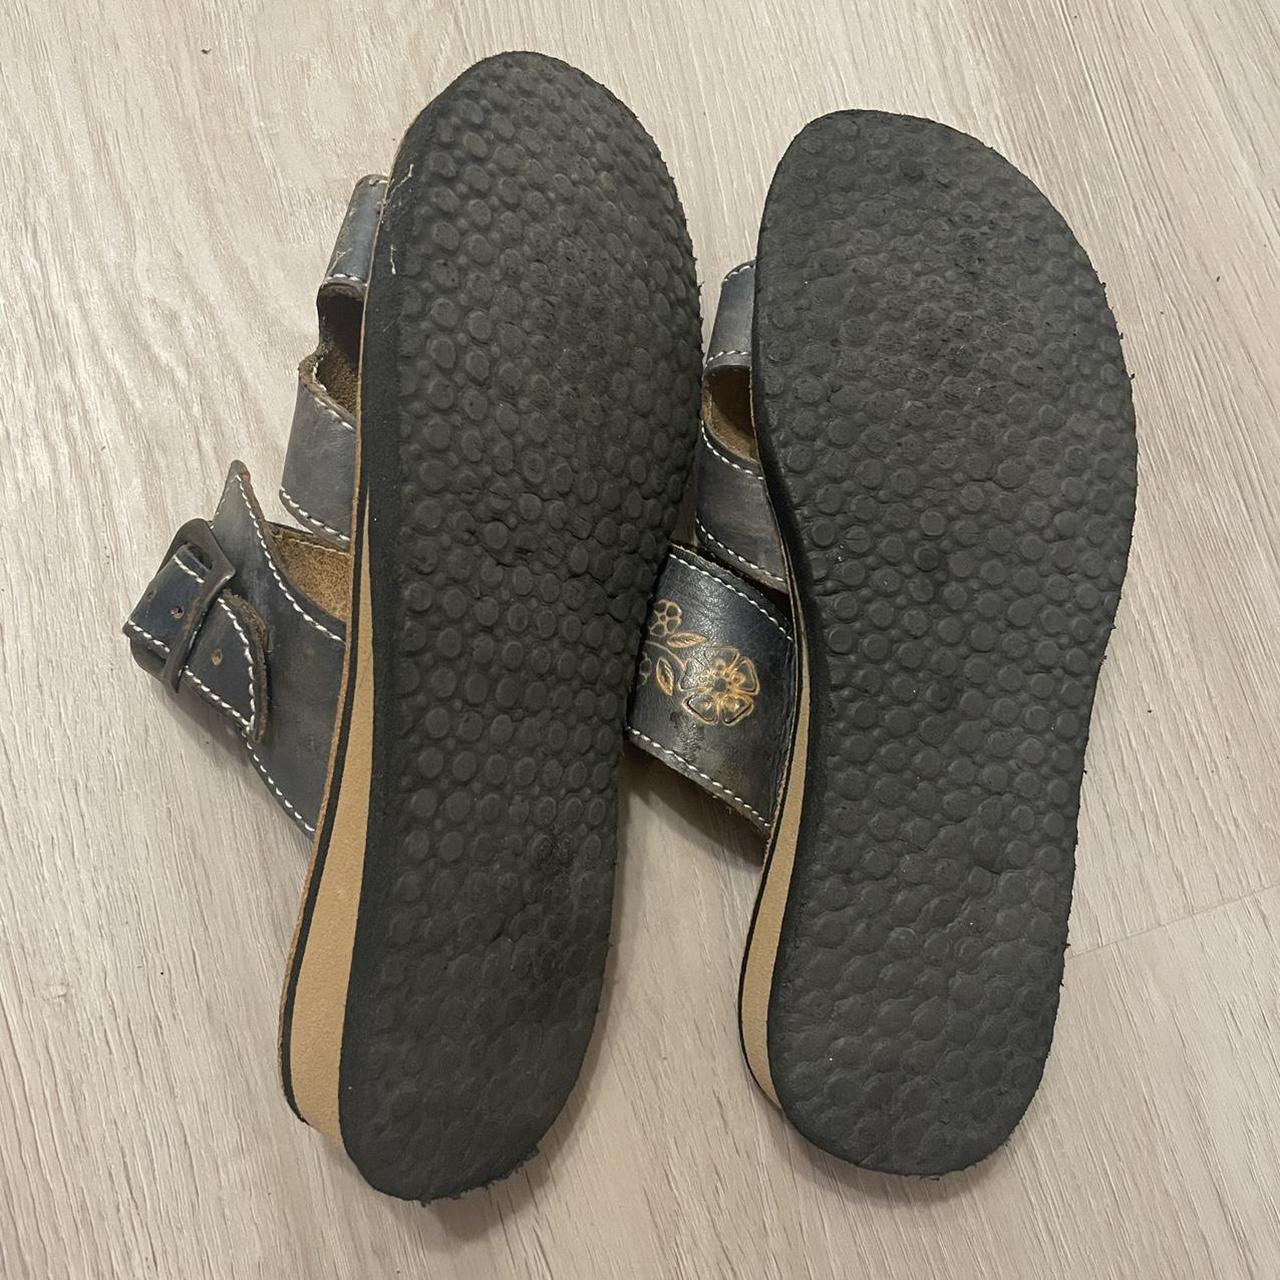 vintage y2k tooled leather sandals. leather upper... - Depop